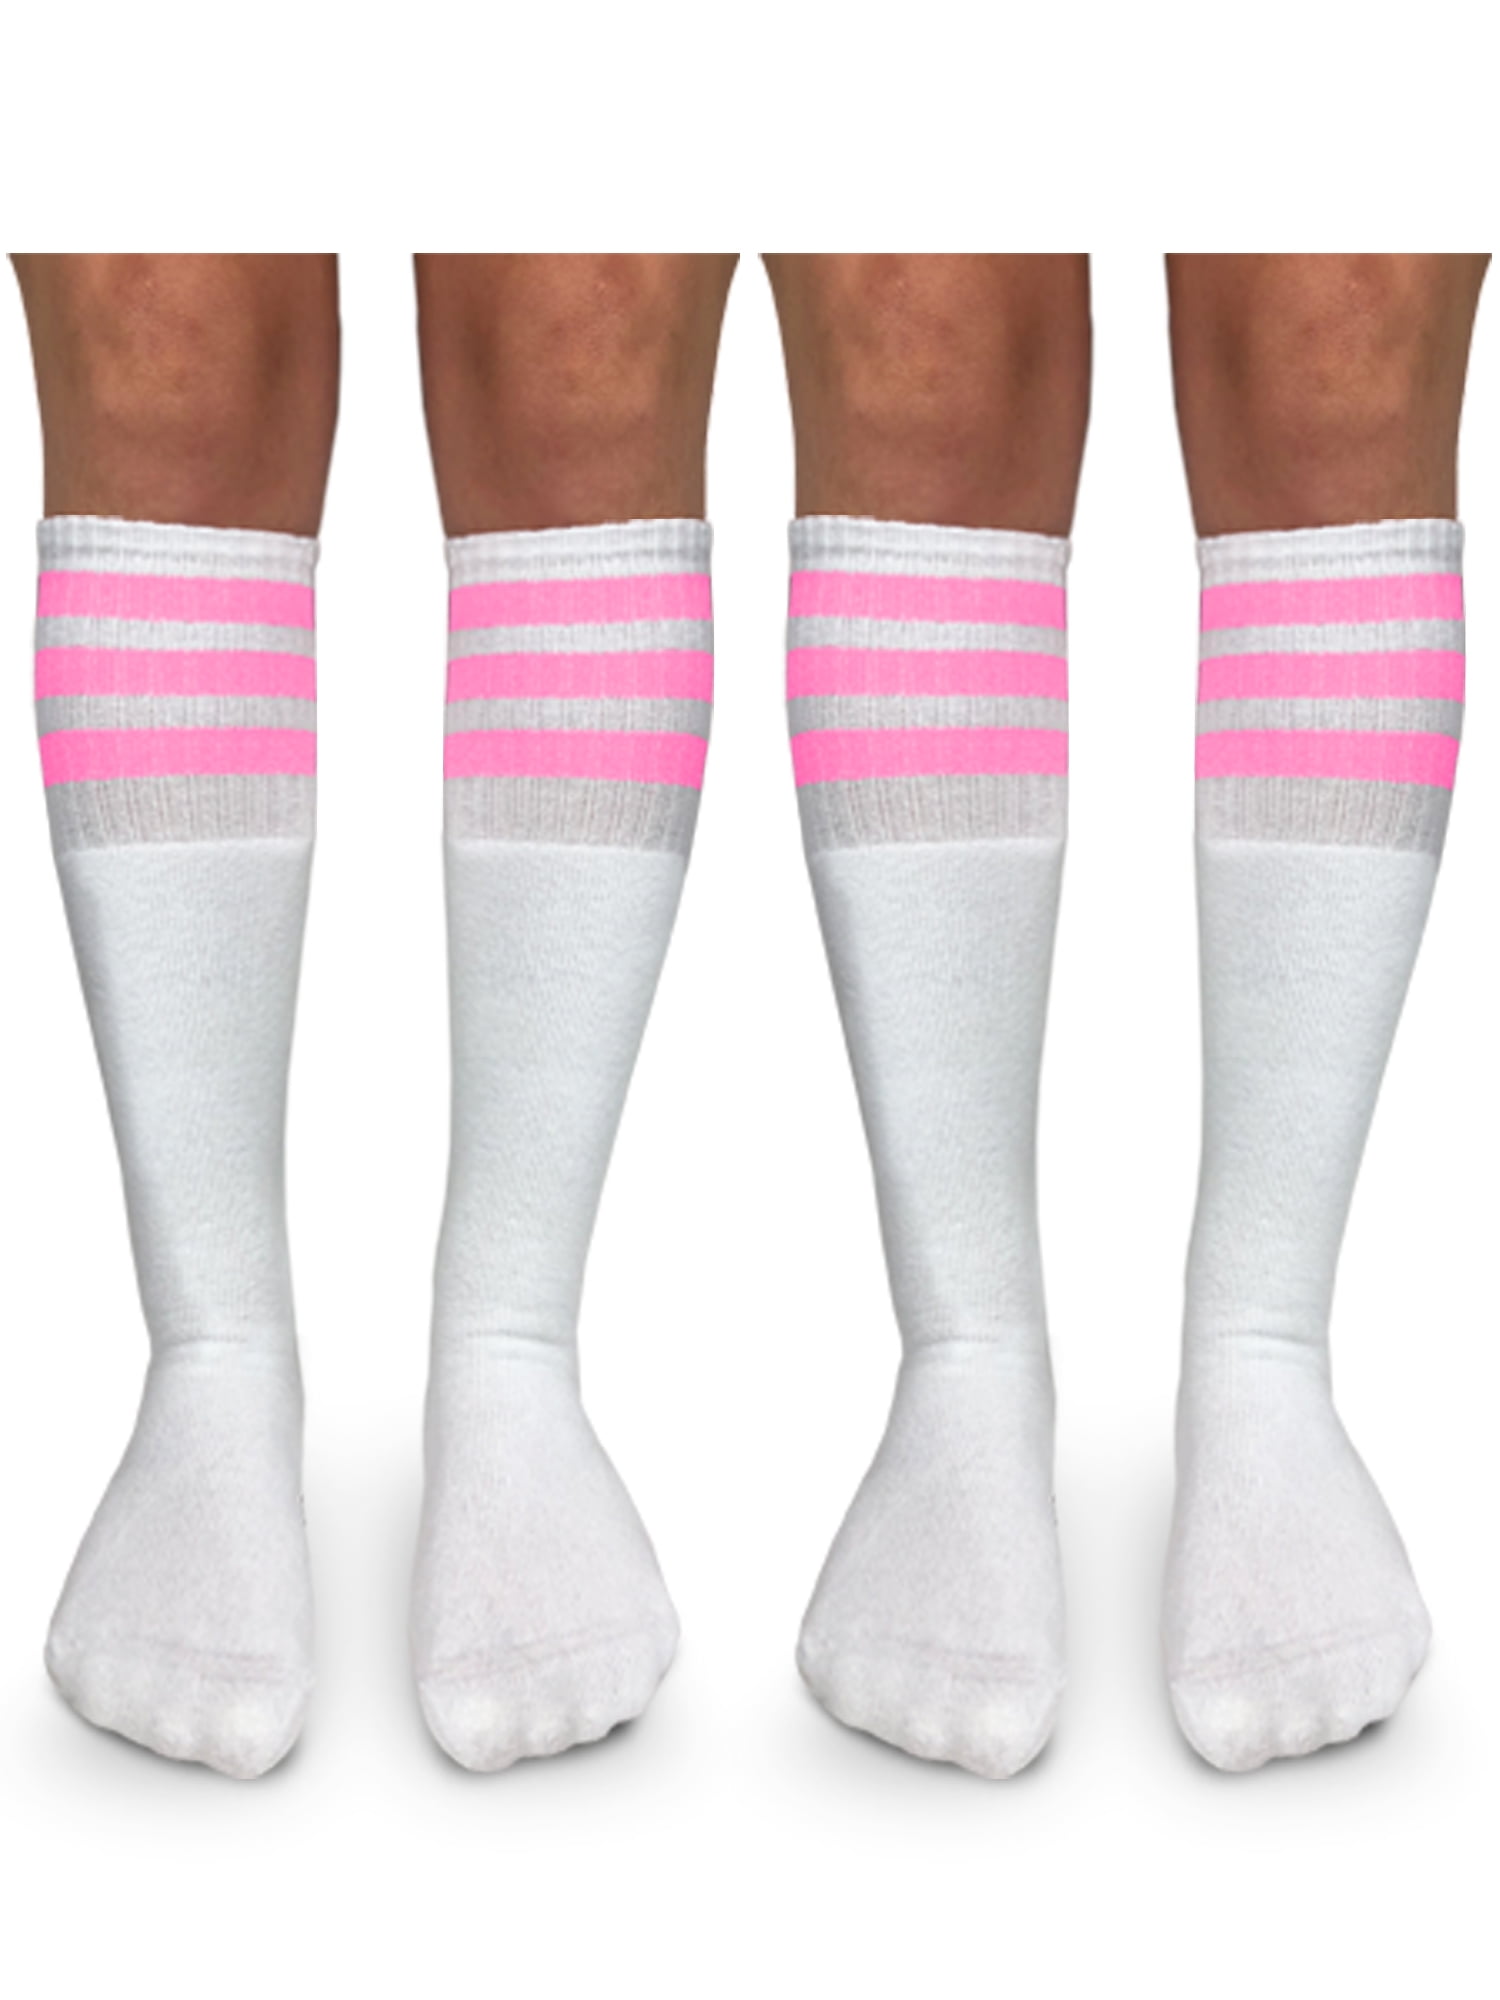 Jefferies Socks Boys Girls Unisex Stripe Assorted Knee High Tube Socks 4 Pack 